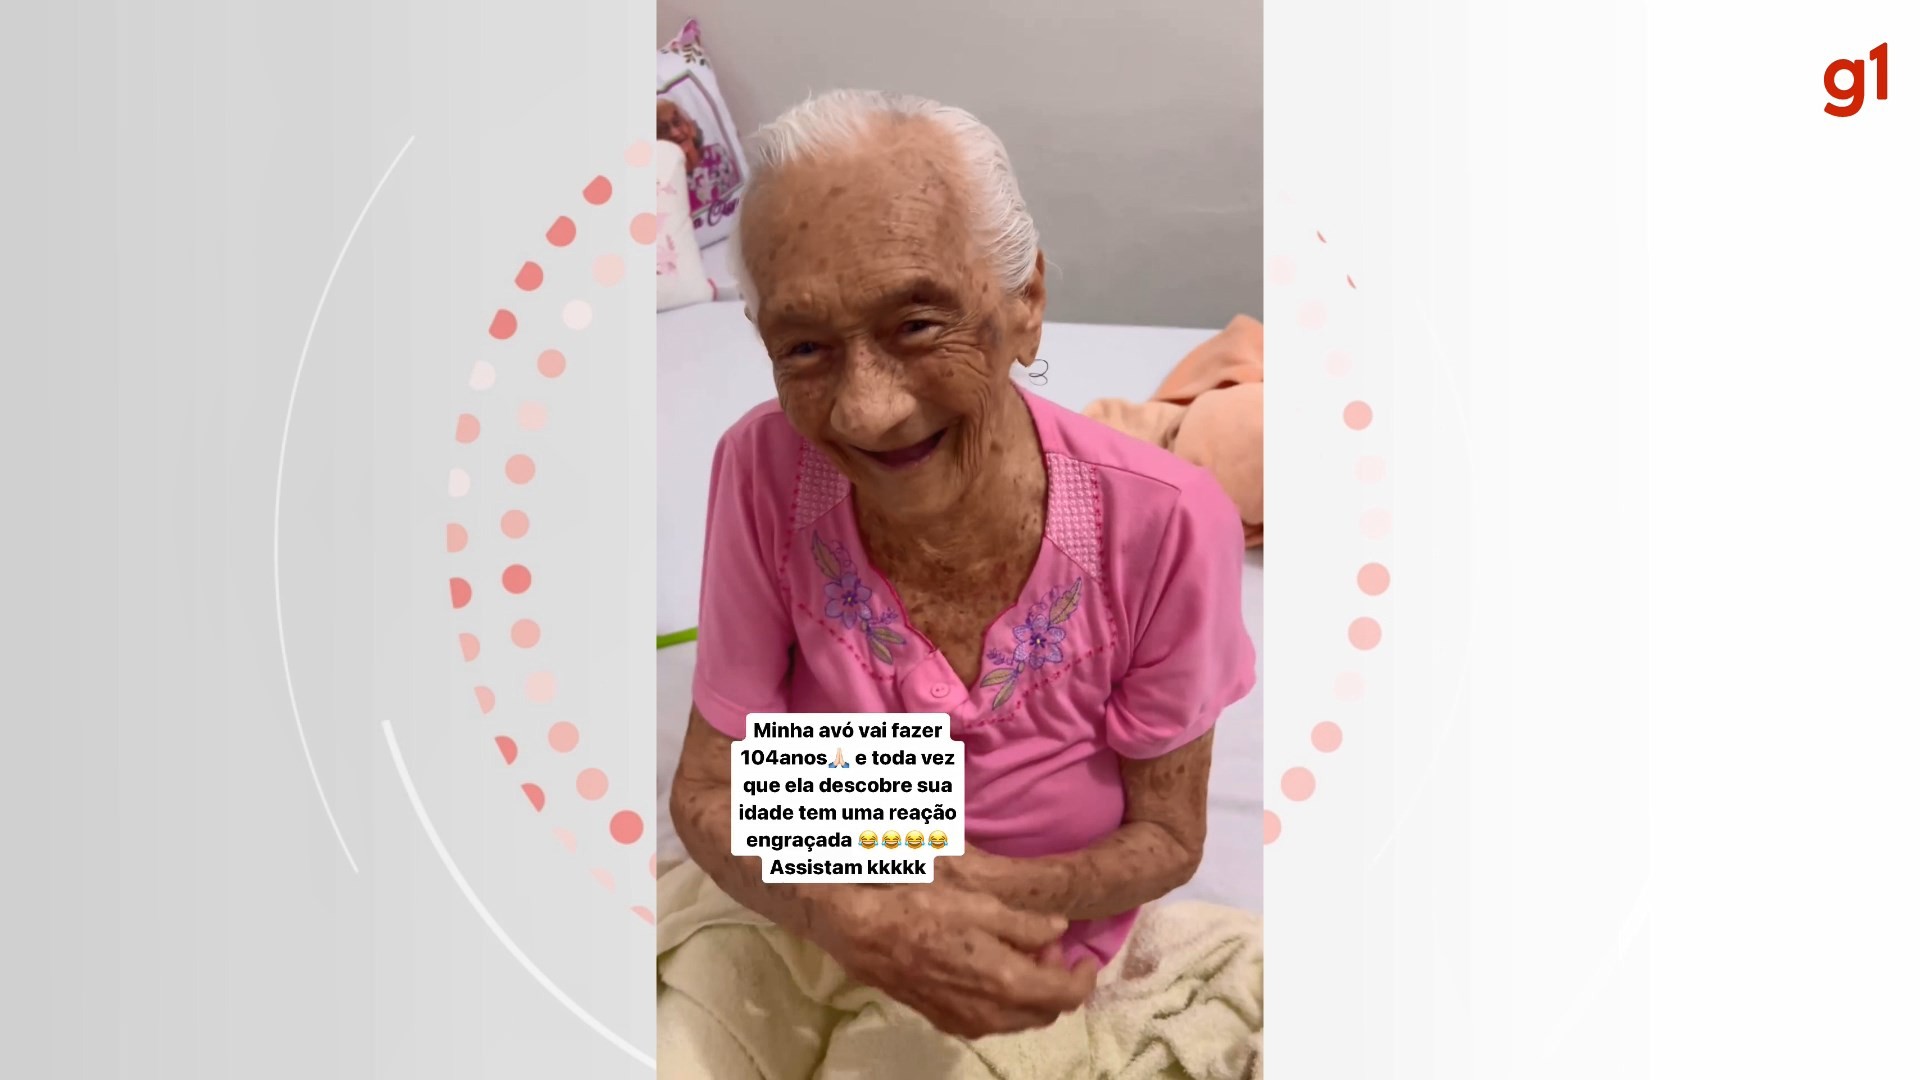 Vovó com 103 anos viraliza após descobrir a própria idade: 'Tô fortinha!'; assista ao VÍDEO